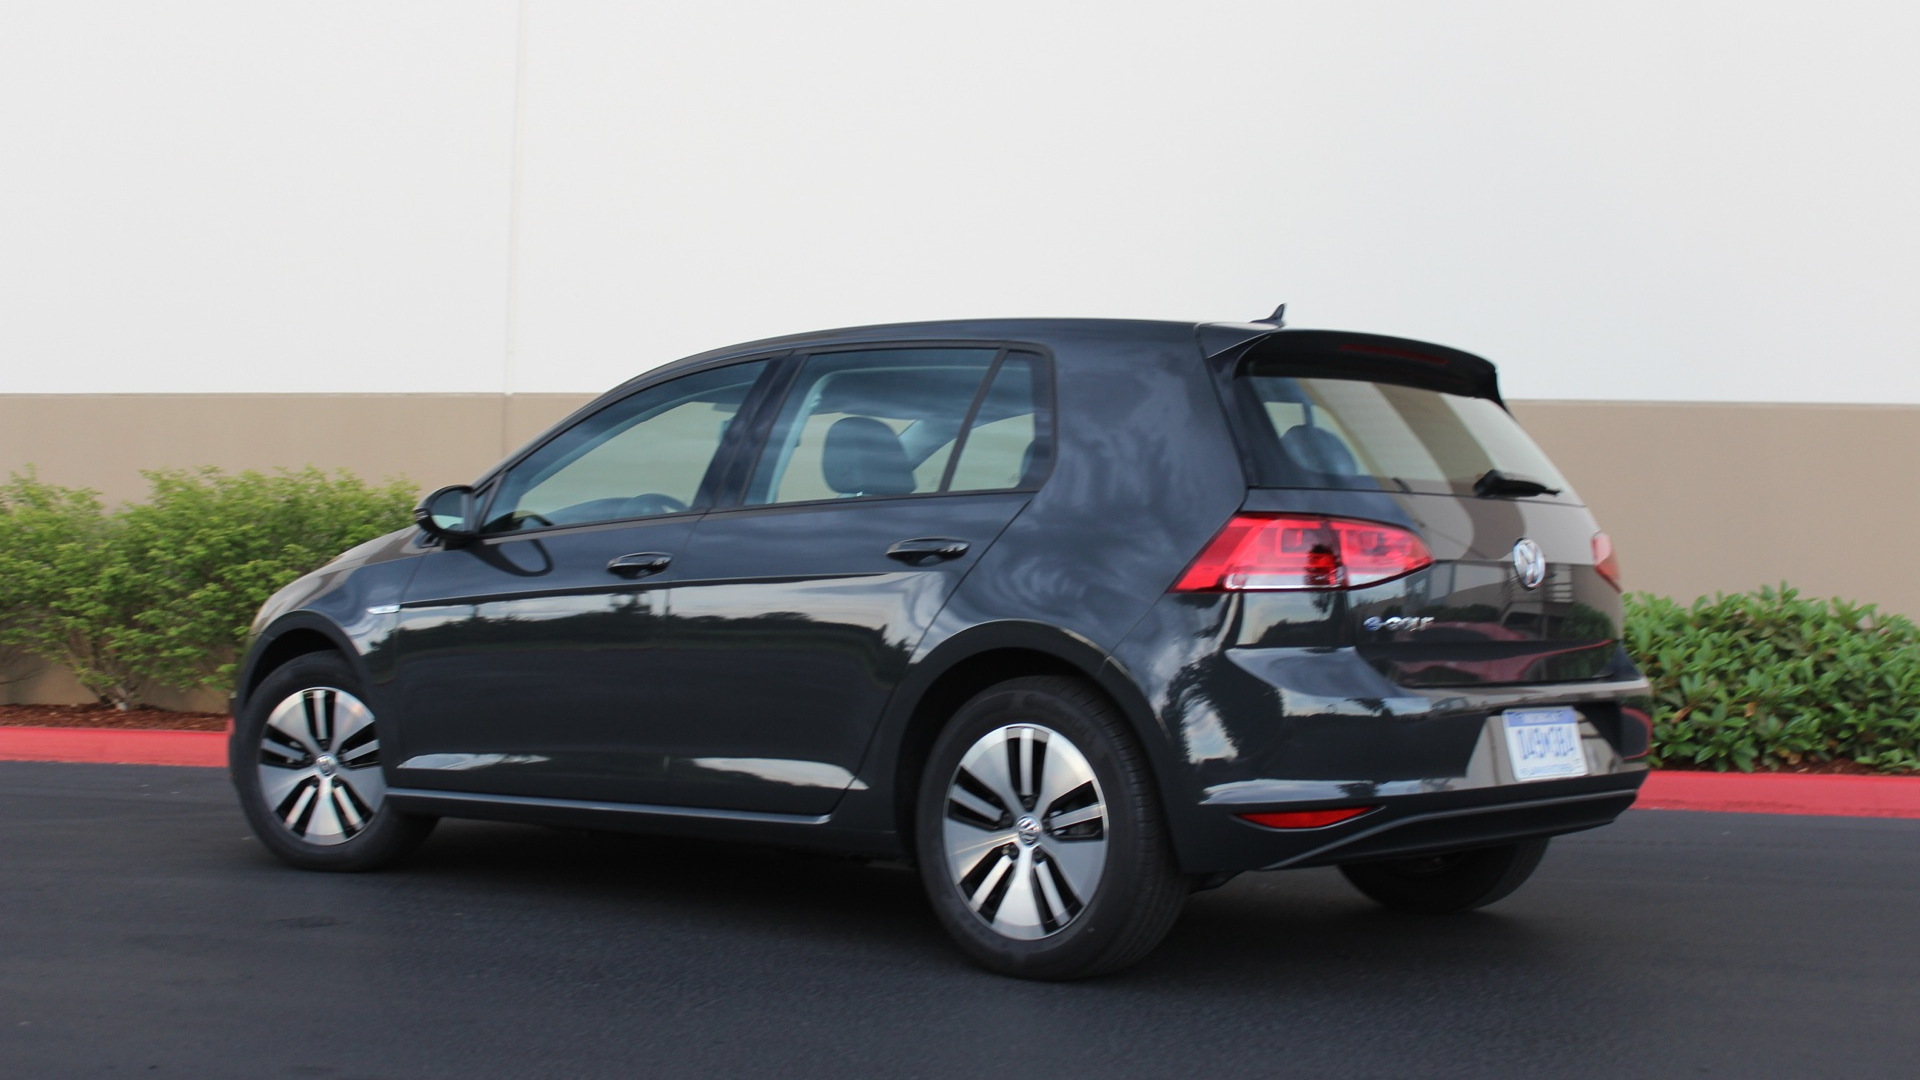 2015 Volkswagen e-Golf  -  Long-term test car